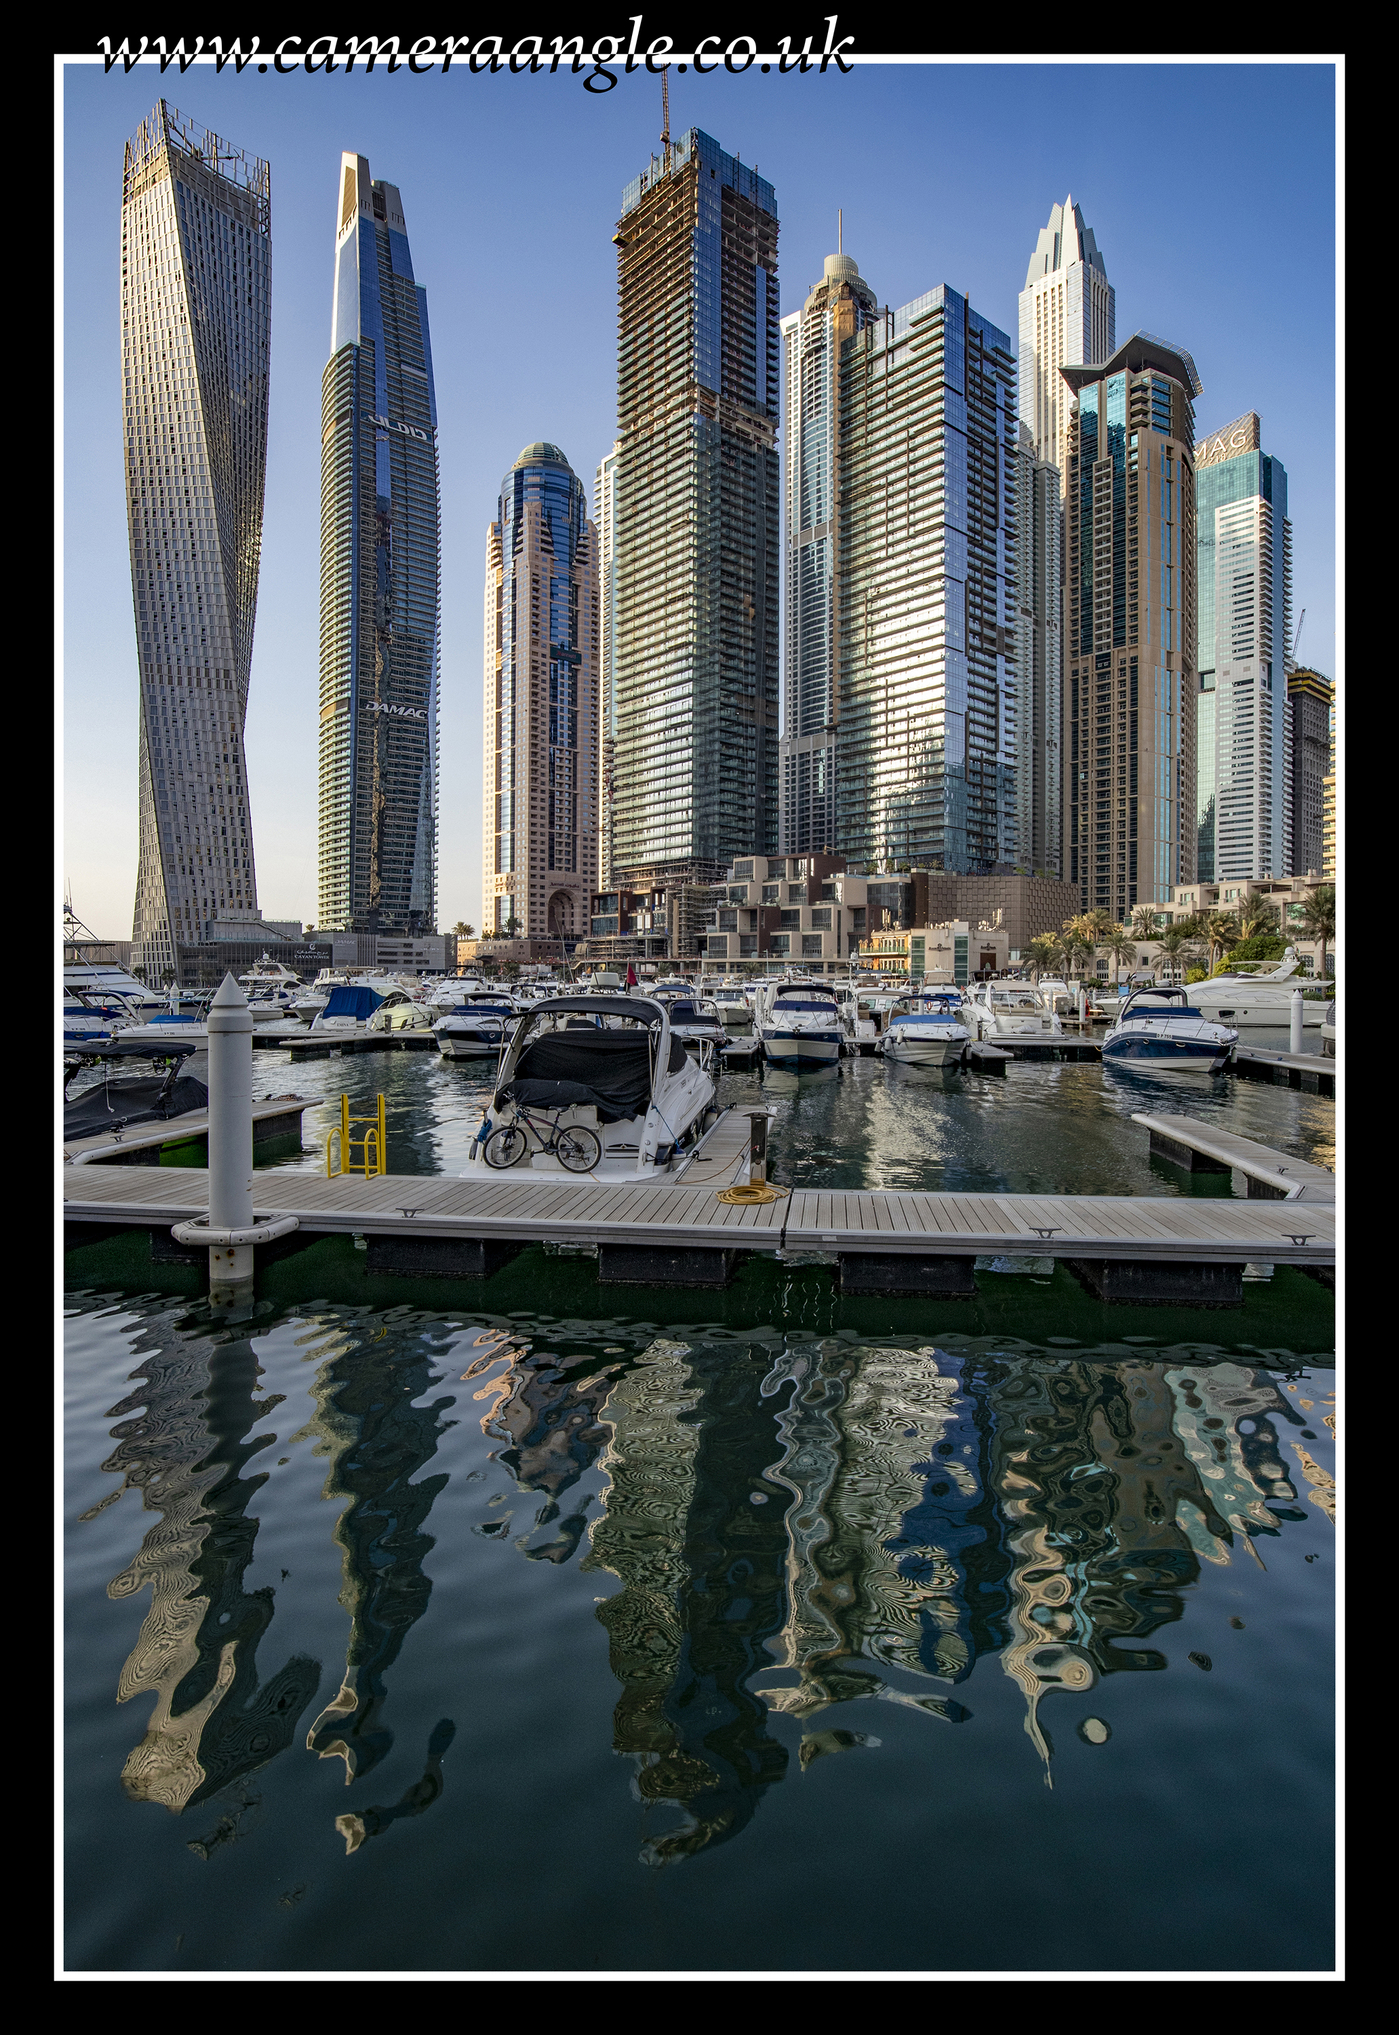 Dubai Marina
Keywords: Dubai Marina